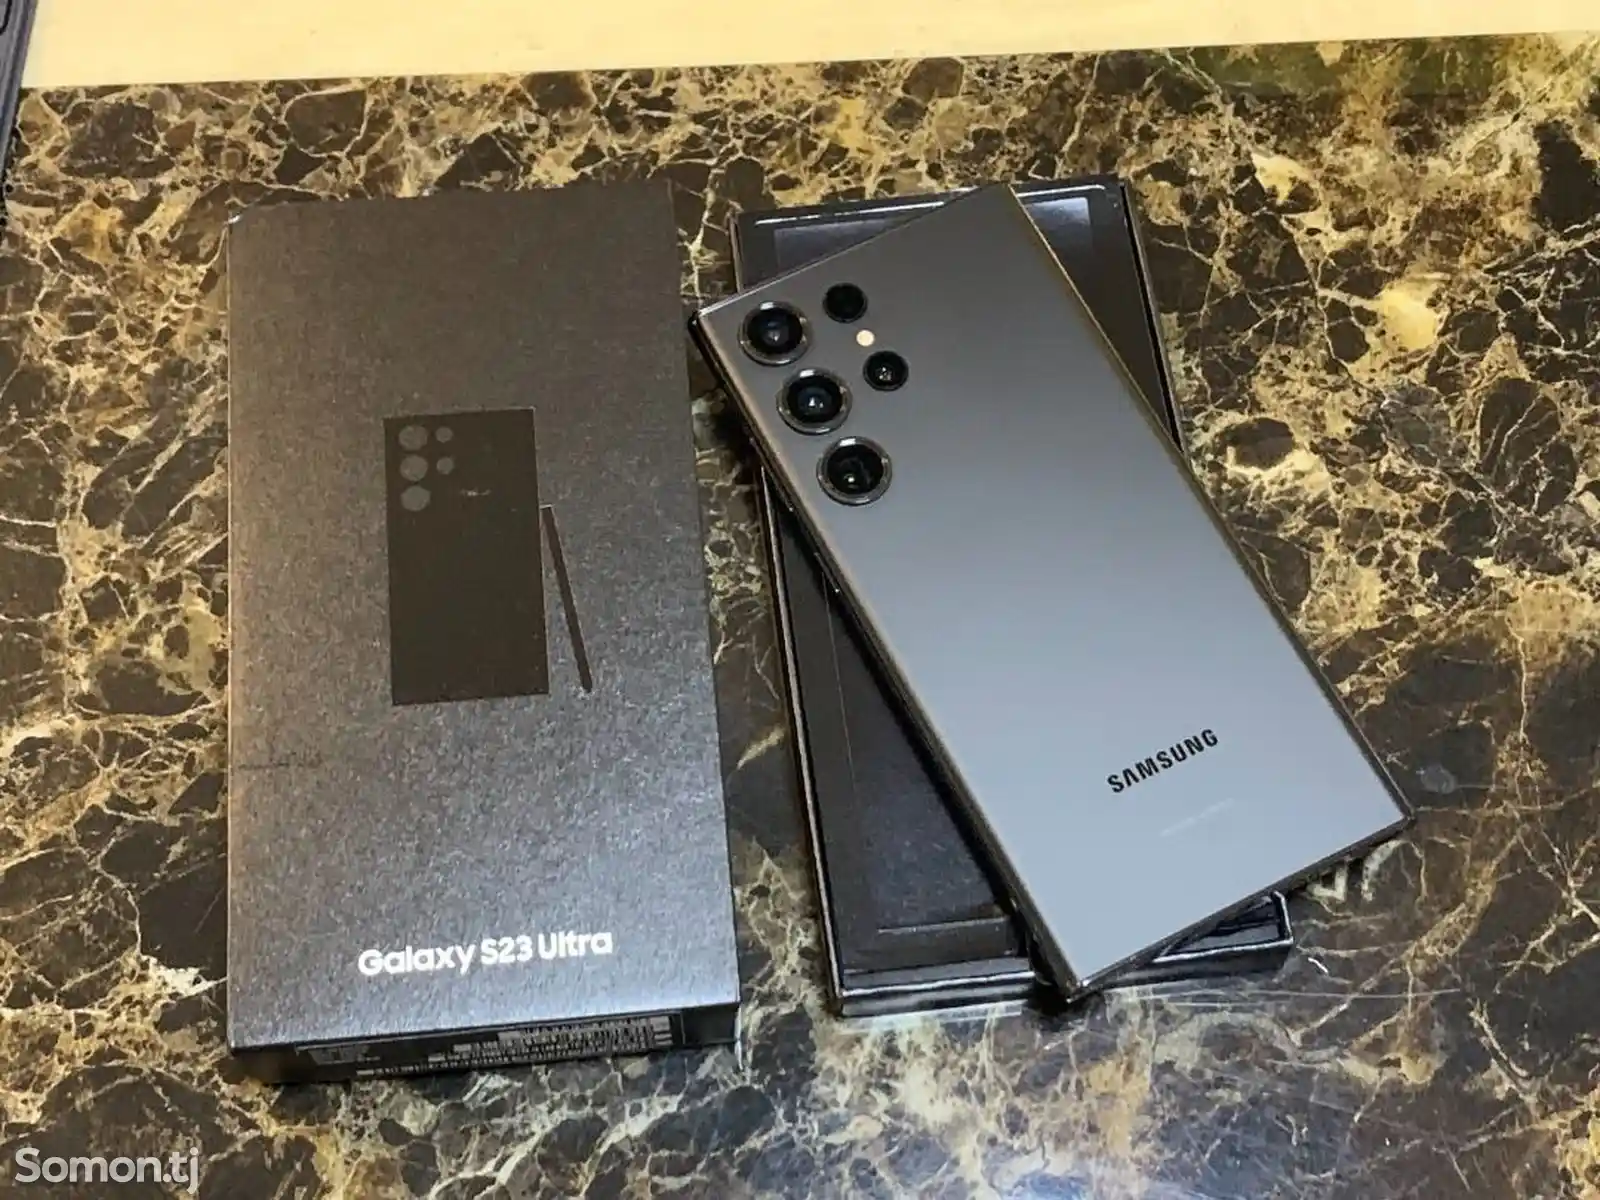 Samsung Galaxy S23 Ultra 12/256gb-1